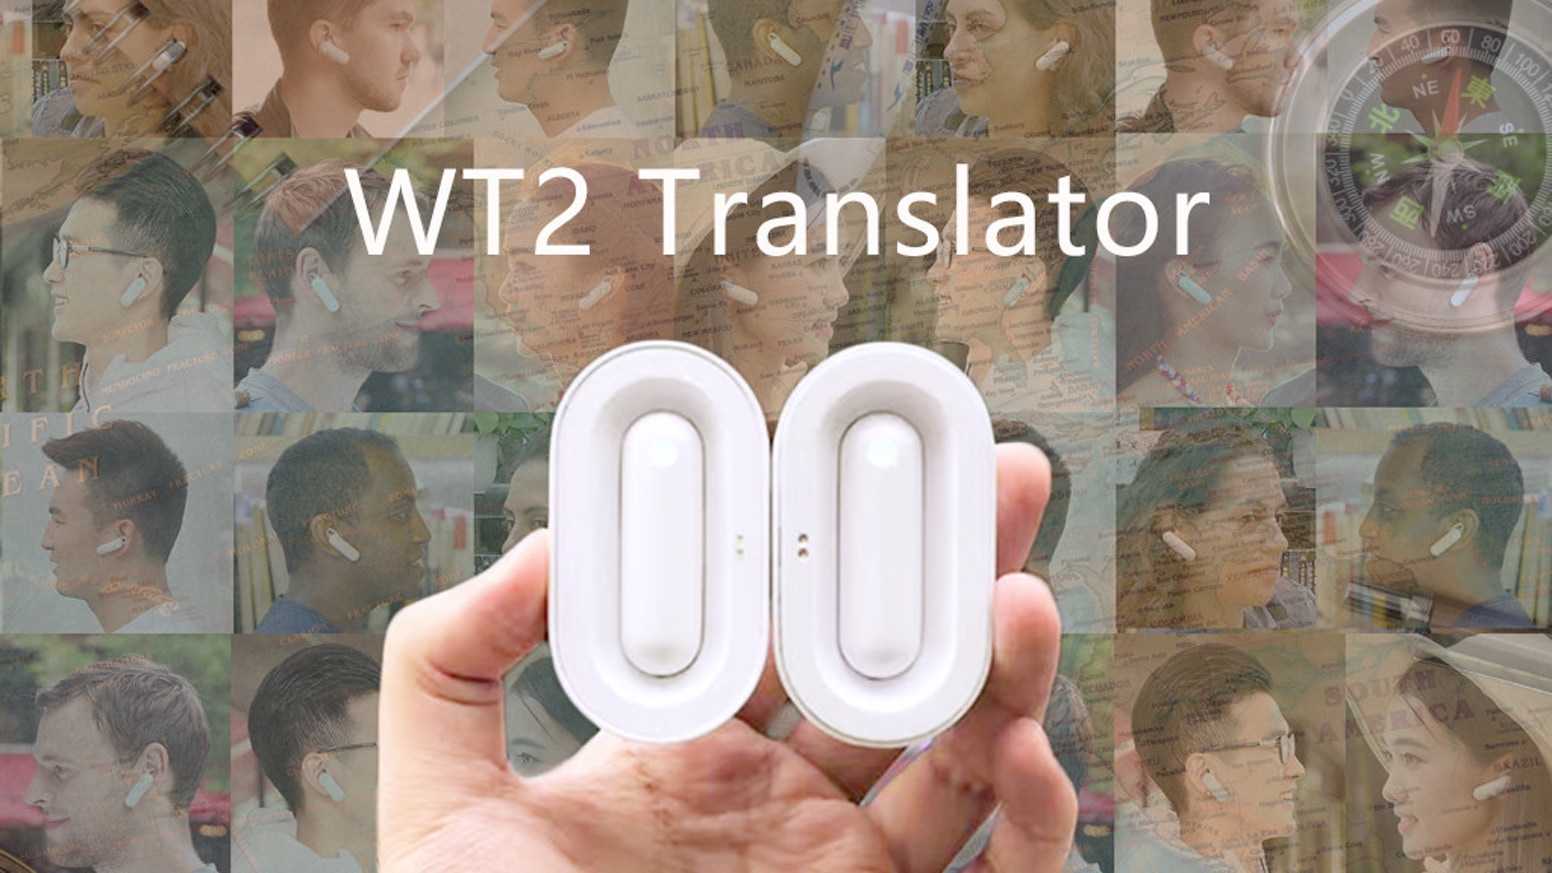 Топ-14 лучших электронных переводчиков 2020 года: выбираем translator для свободного общения за границей